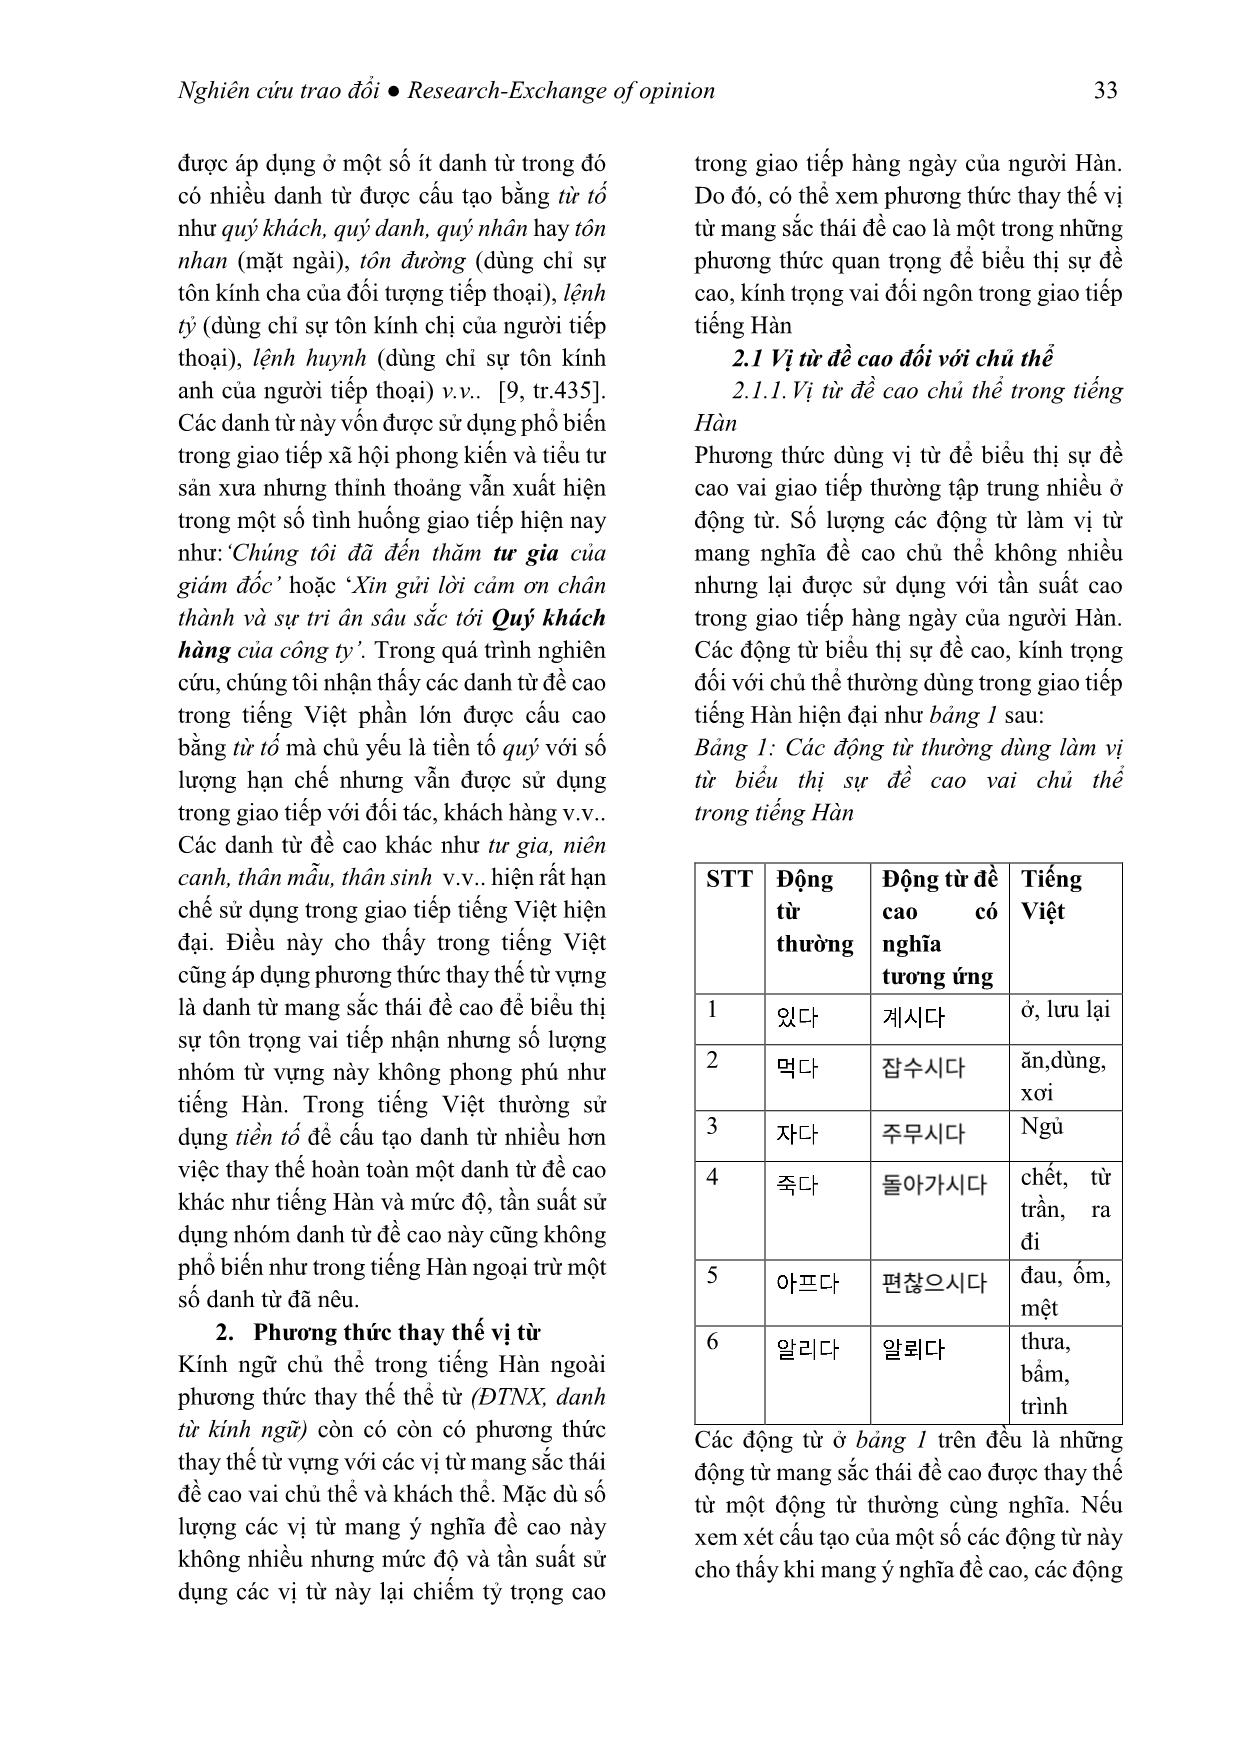 Kính ngữ tiếng Hàn qua phương thức thay thế từ vựng (Xét trong mối tương quan với tiếng Việt) trang 7